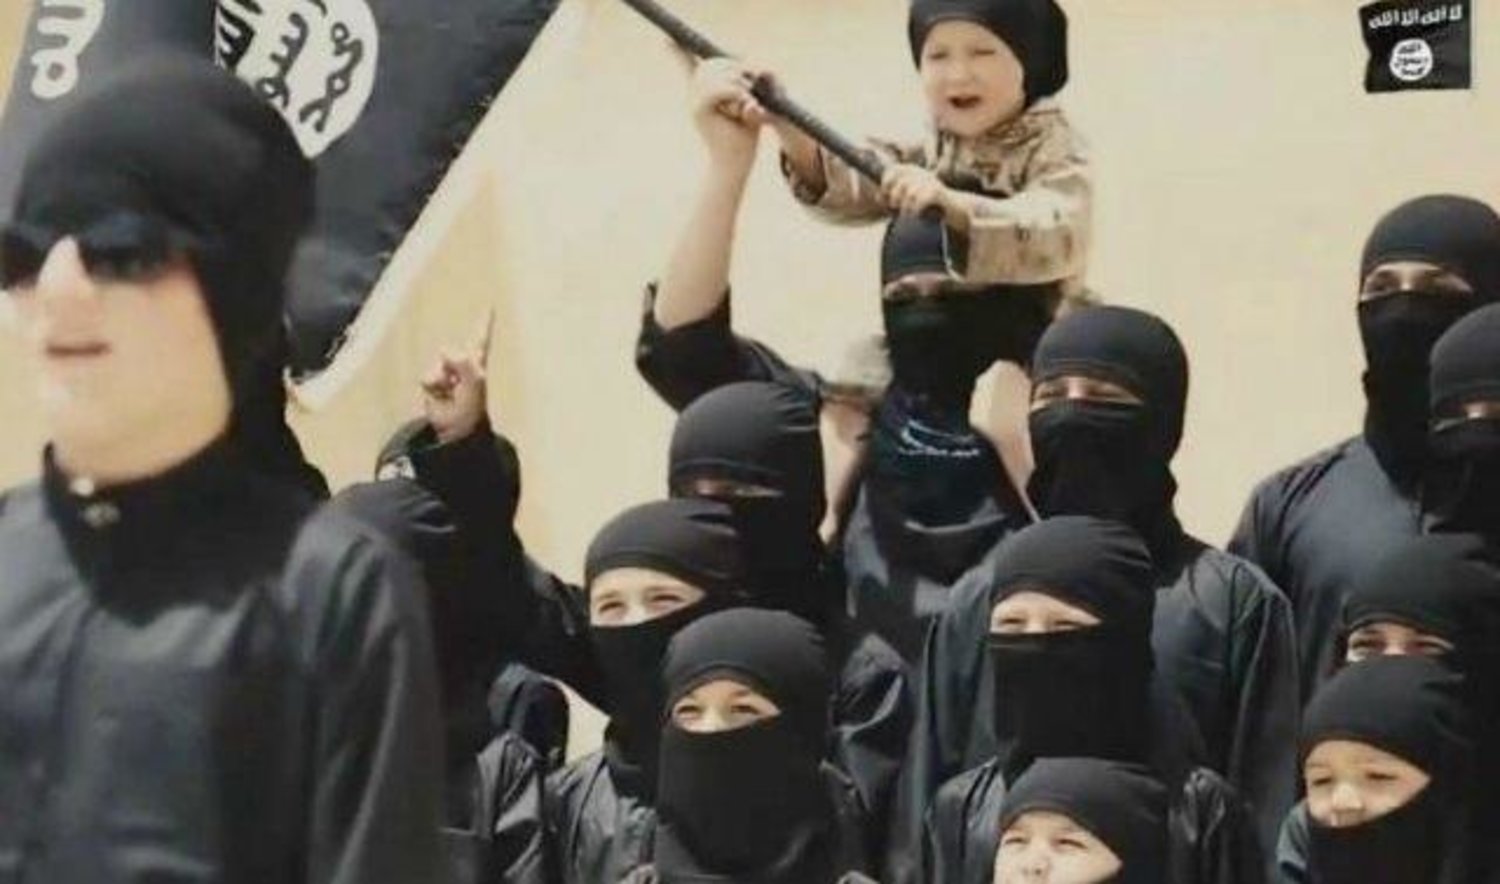 صحيفة الغارديان: تخوف غربي من "موجة إرهاب" جديدة لتنظيم داعش ووكلائه عالميا